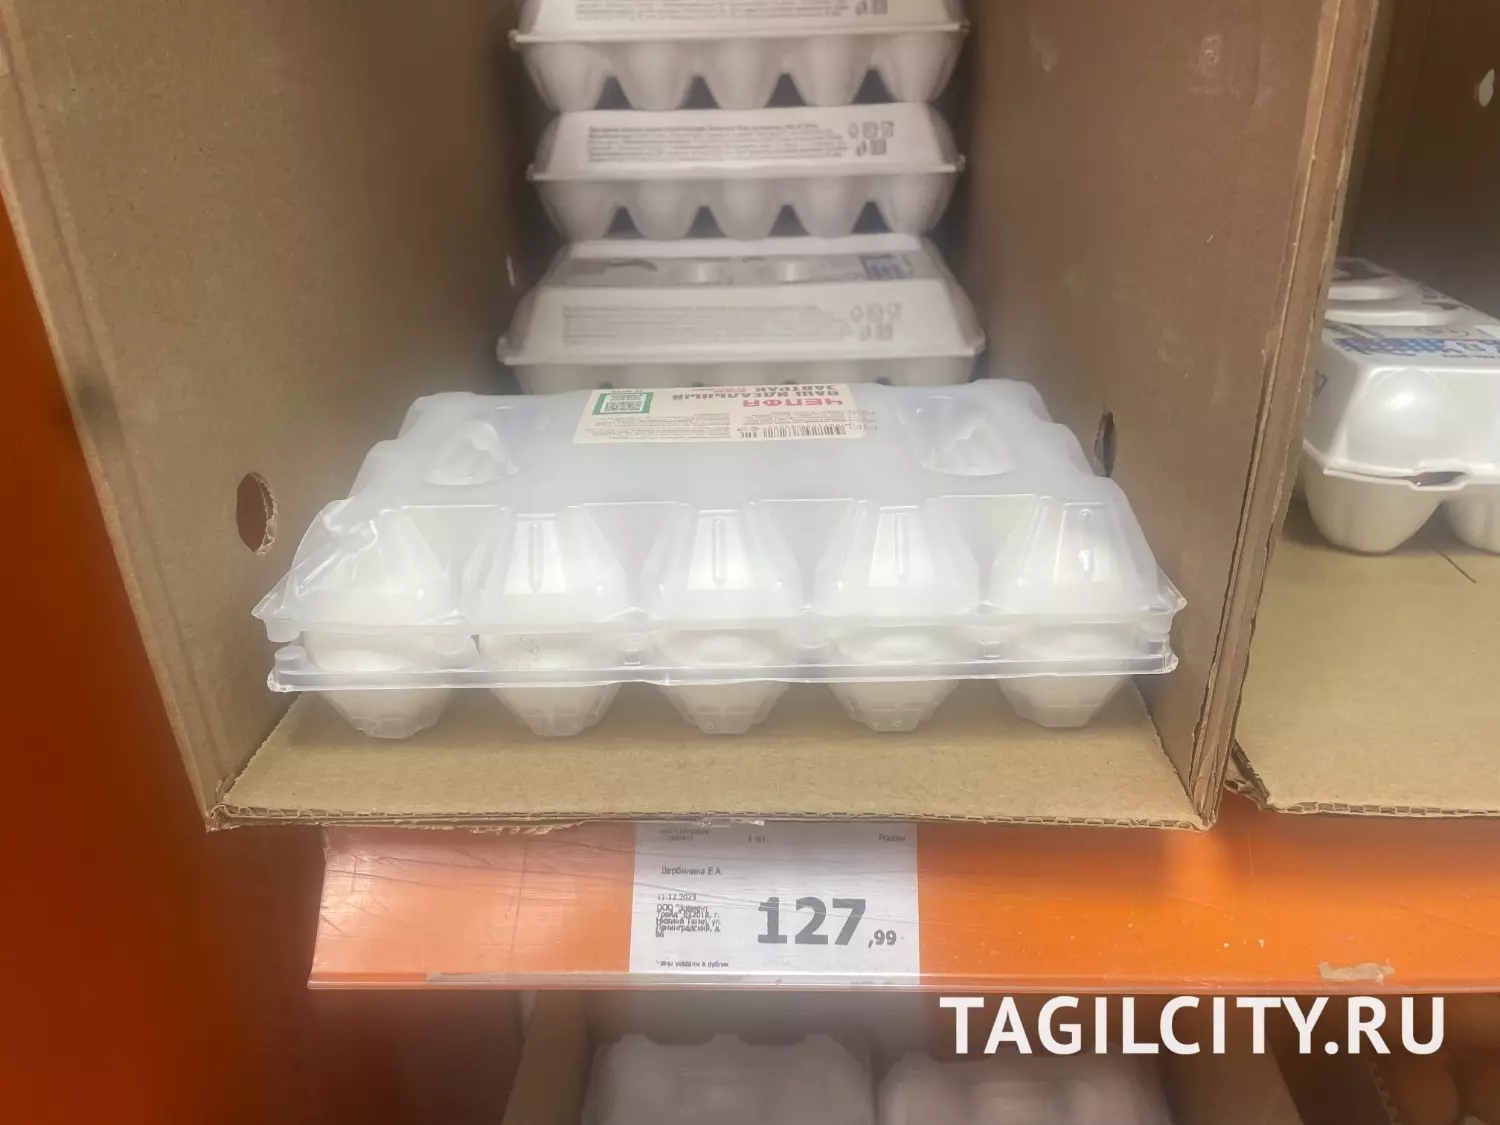 Цены на яйца в Нижнем Тагиле